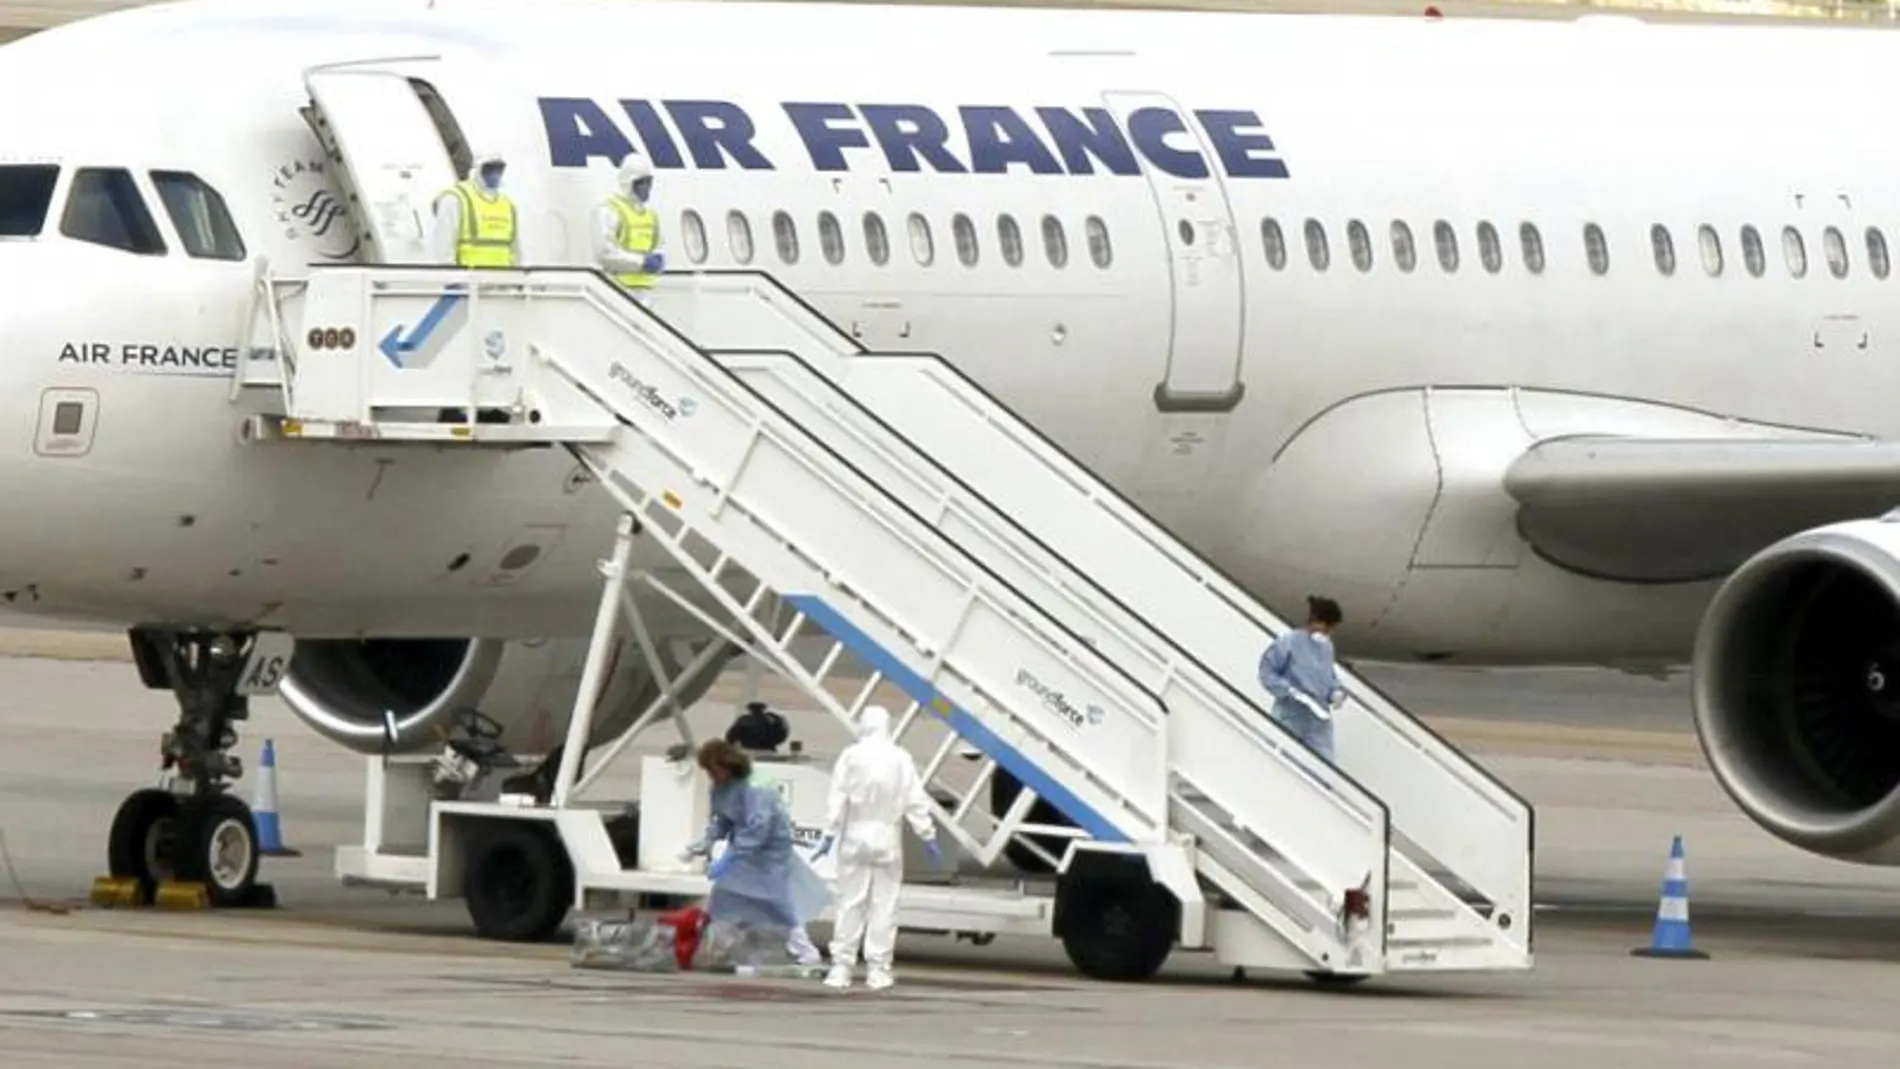 España ha activado el protocolo de emergencia sanitaria en el Aeropuerto de Barajas por un pasajero de Air France que durante un vuelo entre París y Madrid sufría temblores, lo que hizo que la tripulación alertara a las autoridades sanitarias españolas.